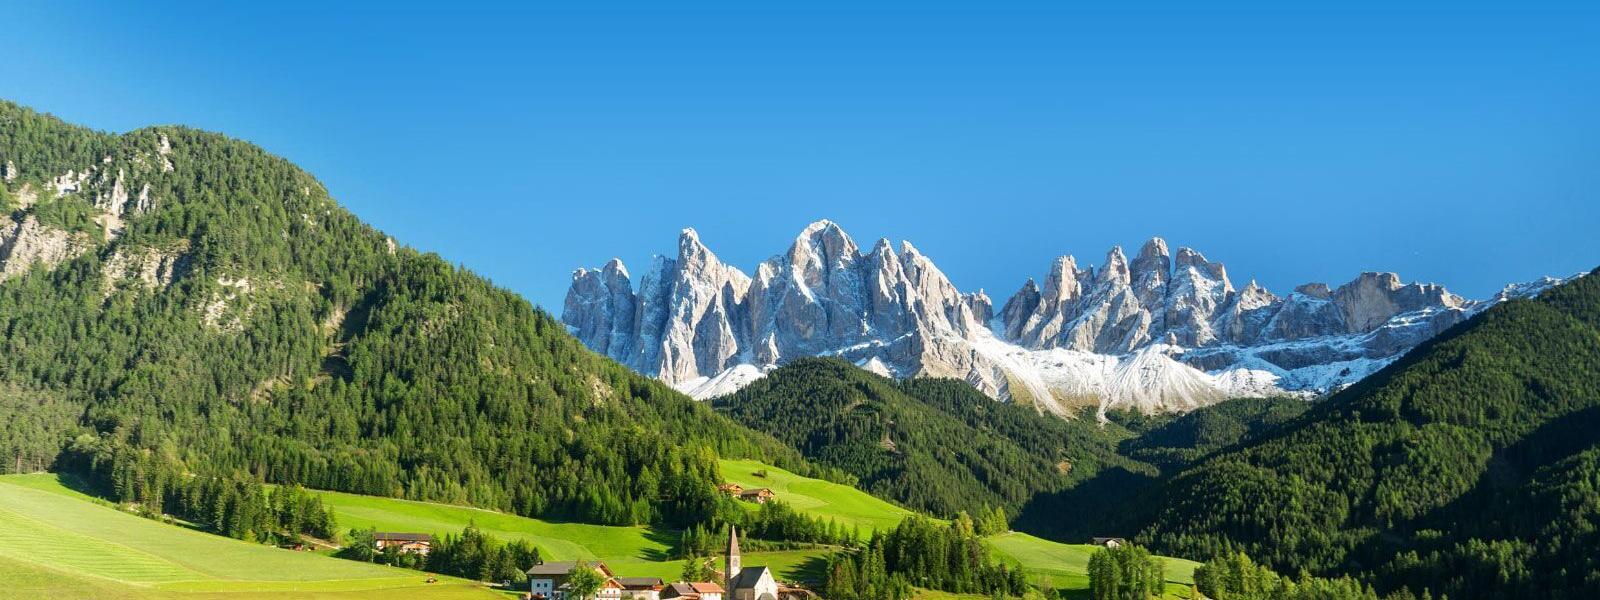 Ferienwohnungen und Ferienhäuser in Südtirol - atraveo